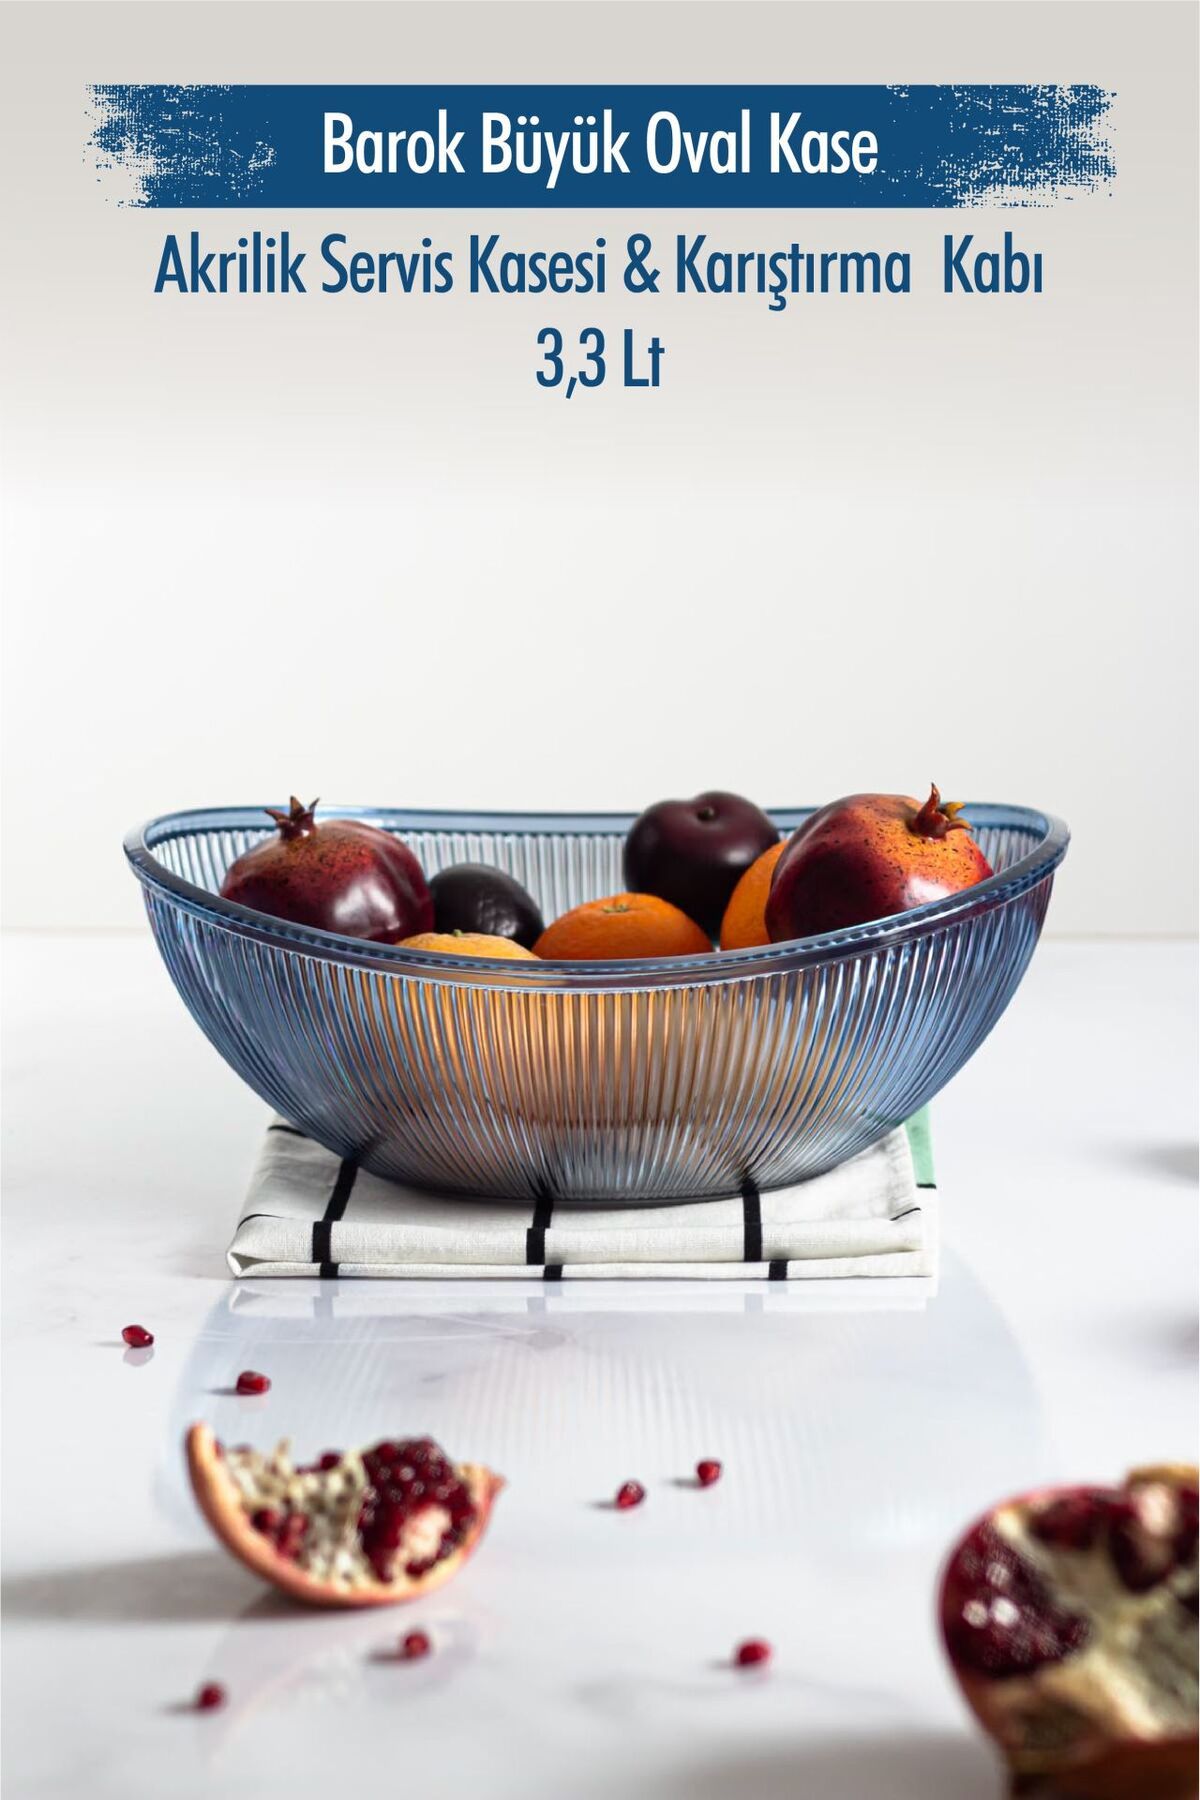 Depa Akrilik Barok Lacivert Büyük Oval Meyve & Salata Kasesi & Karıştırma Kabı / 3,3 Lt  (CAM DEĞİLDİR)